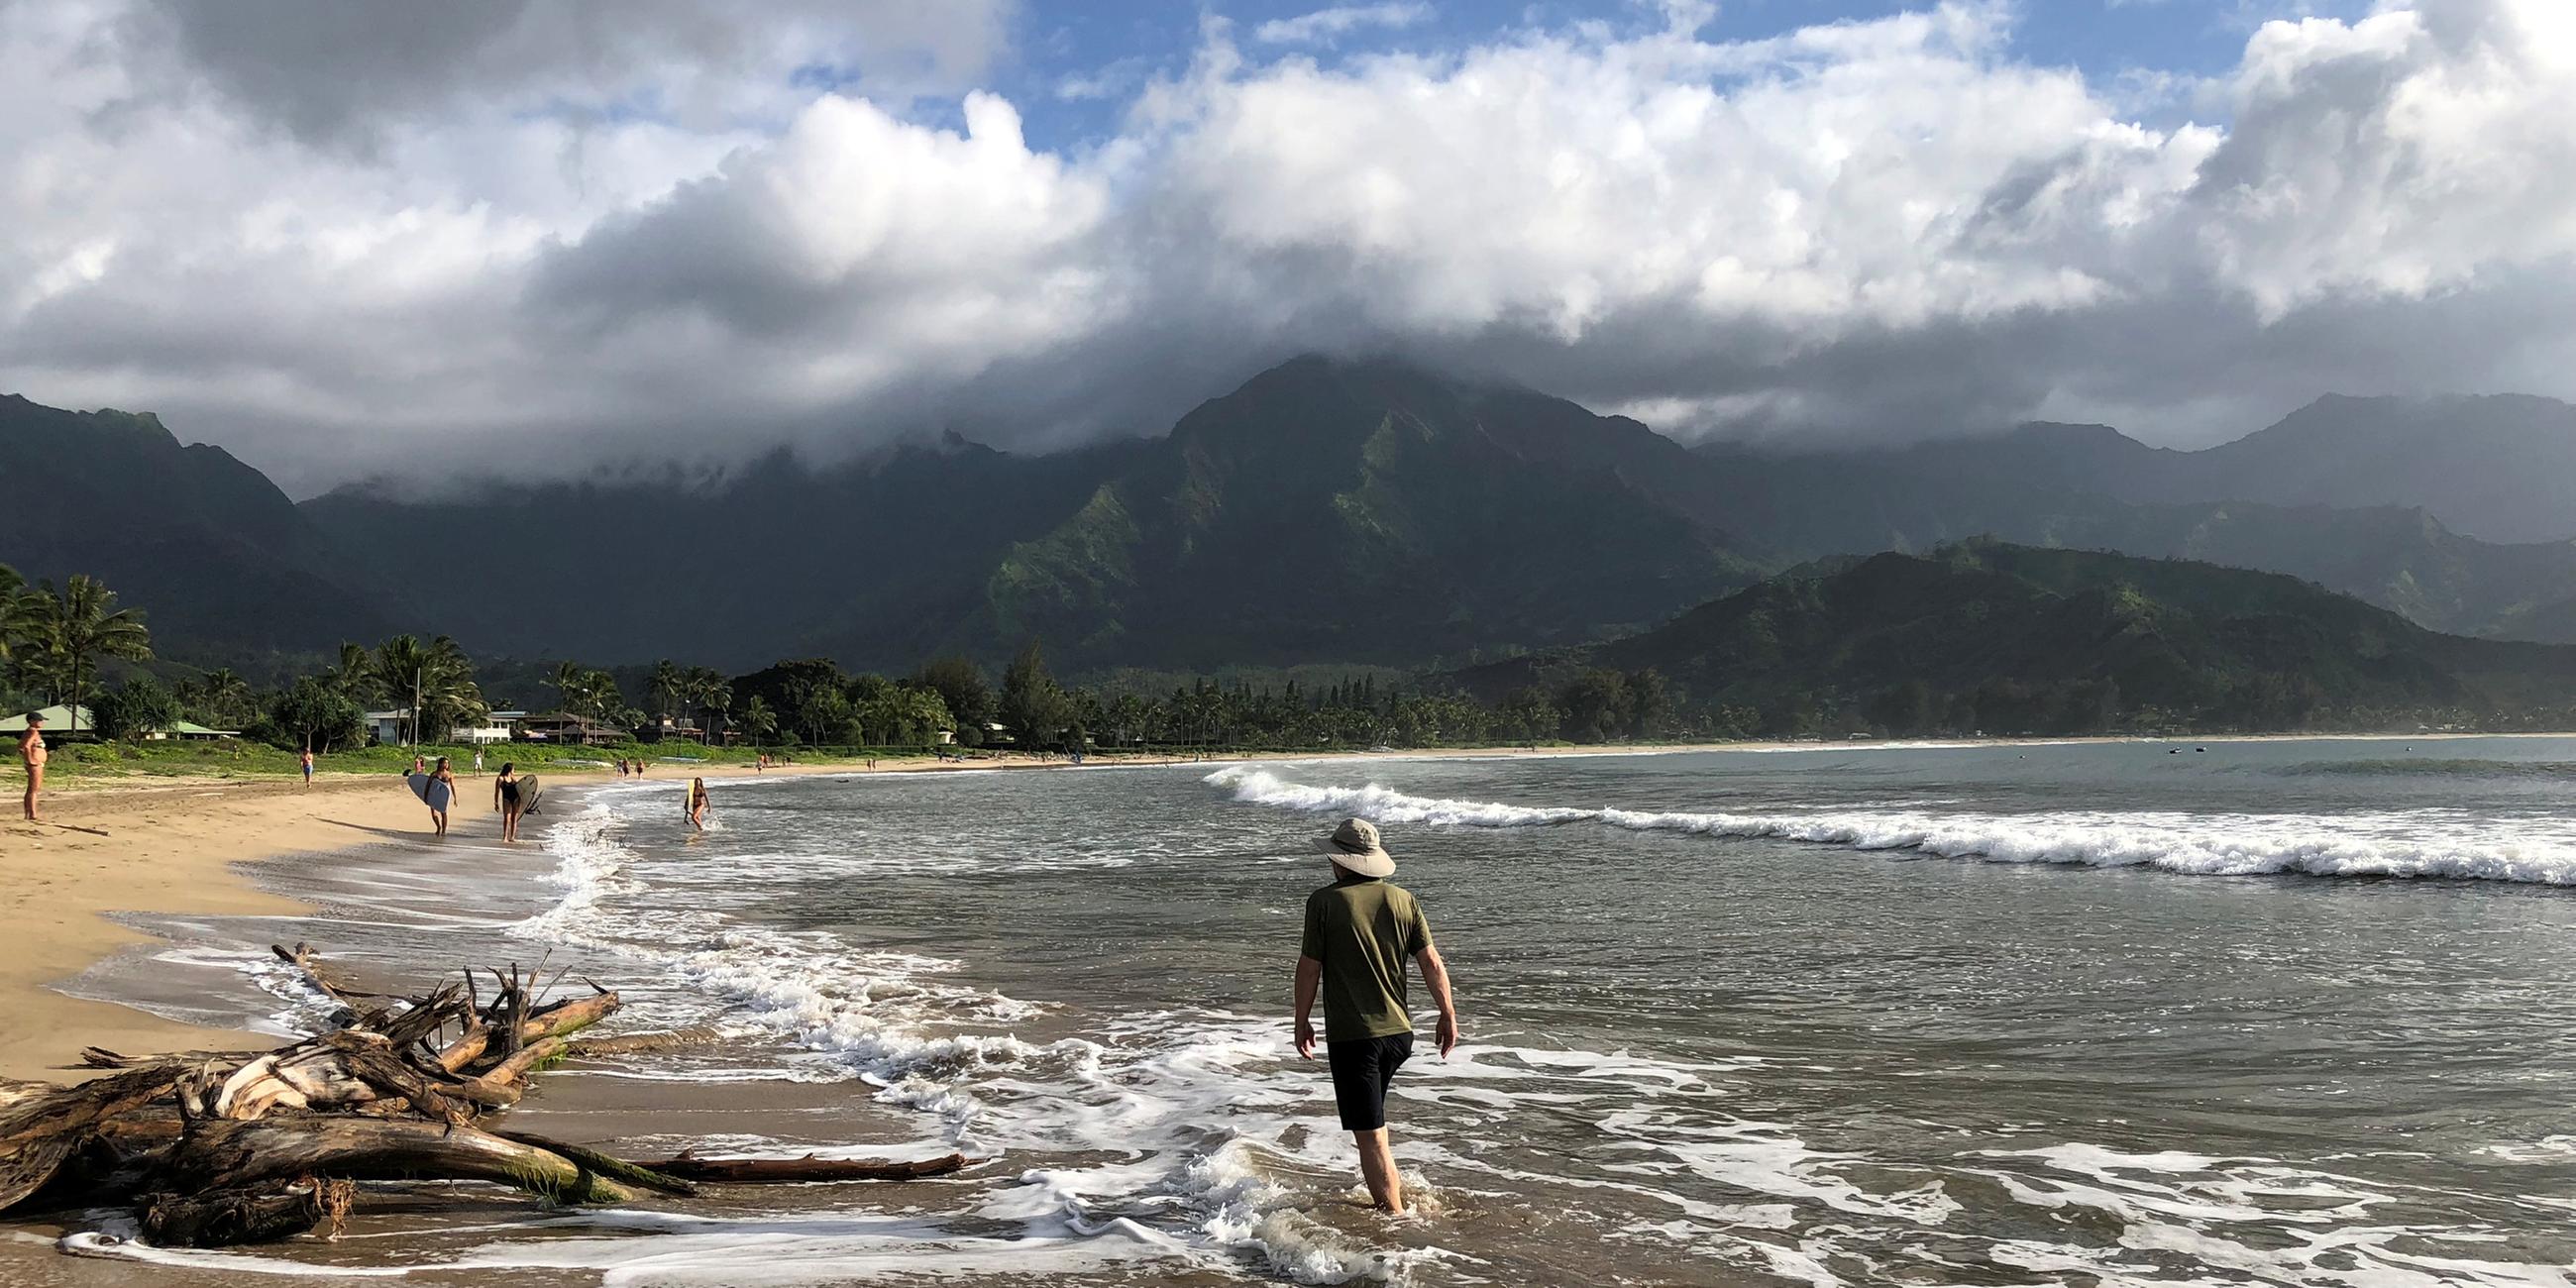 Spaziergänger gehen entlang eines Strandes in Hawaii am 23.08.2018